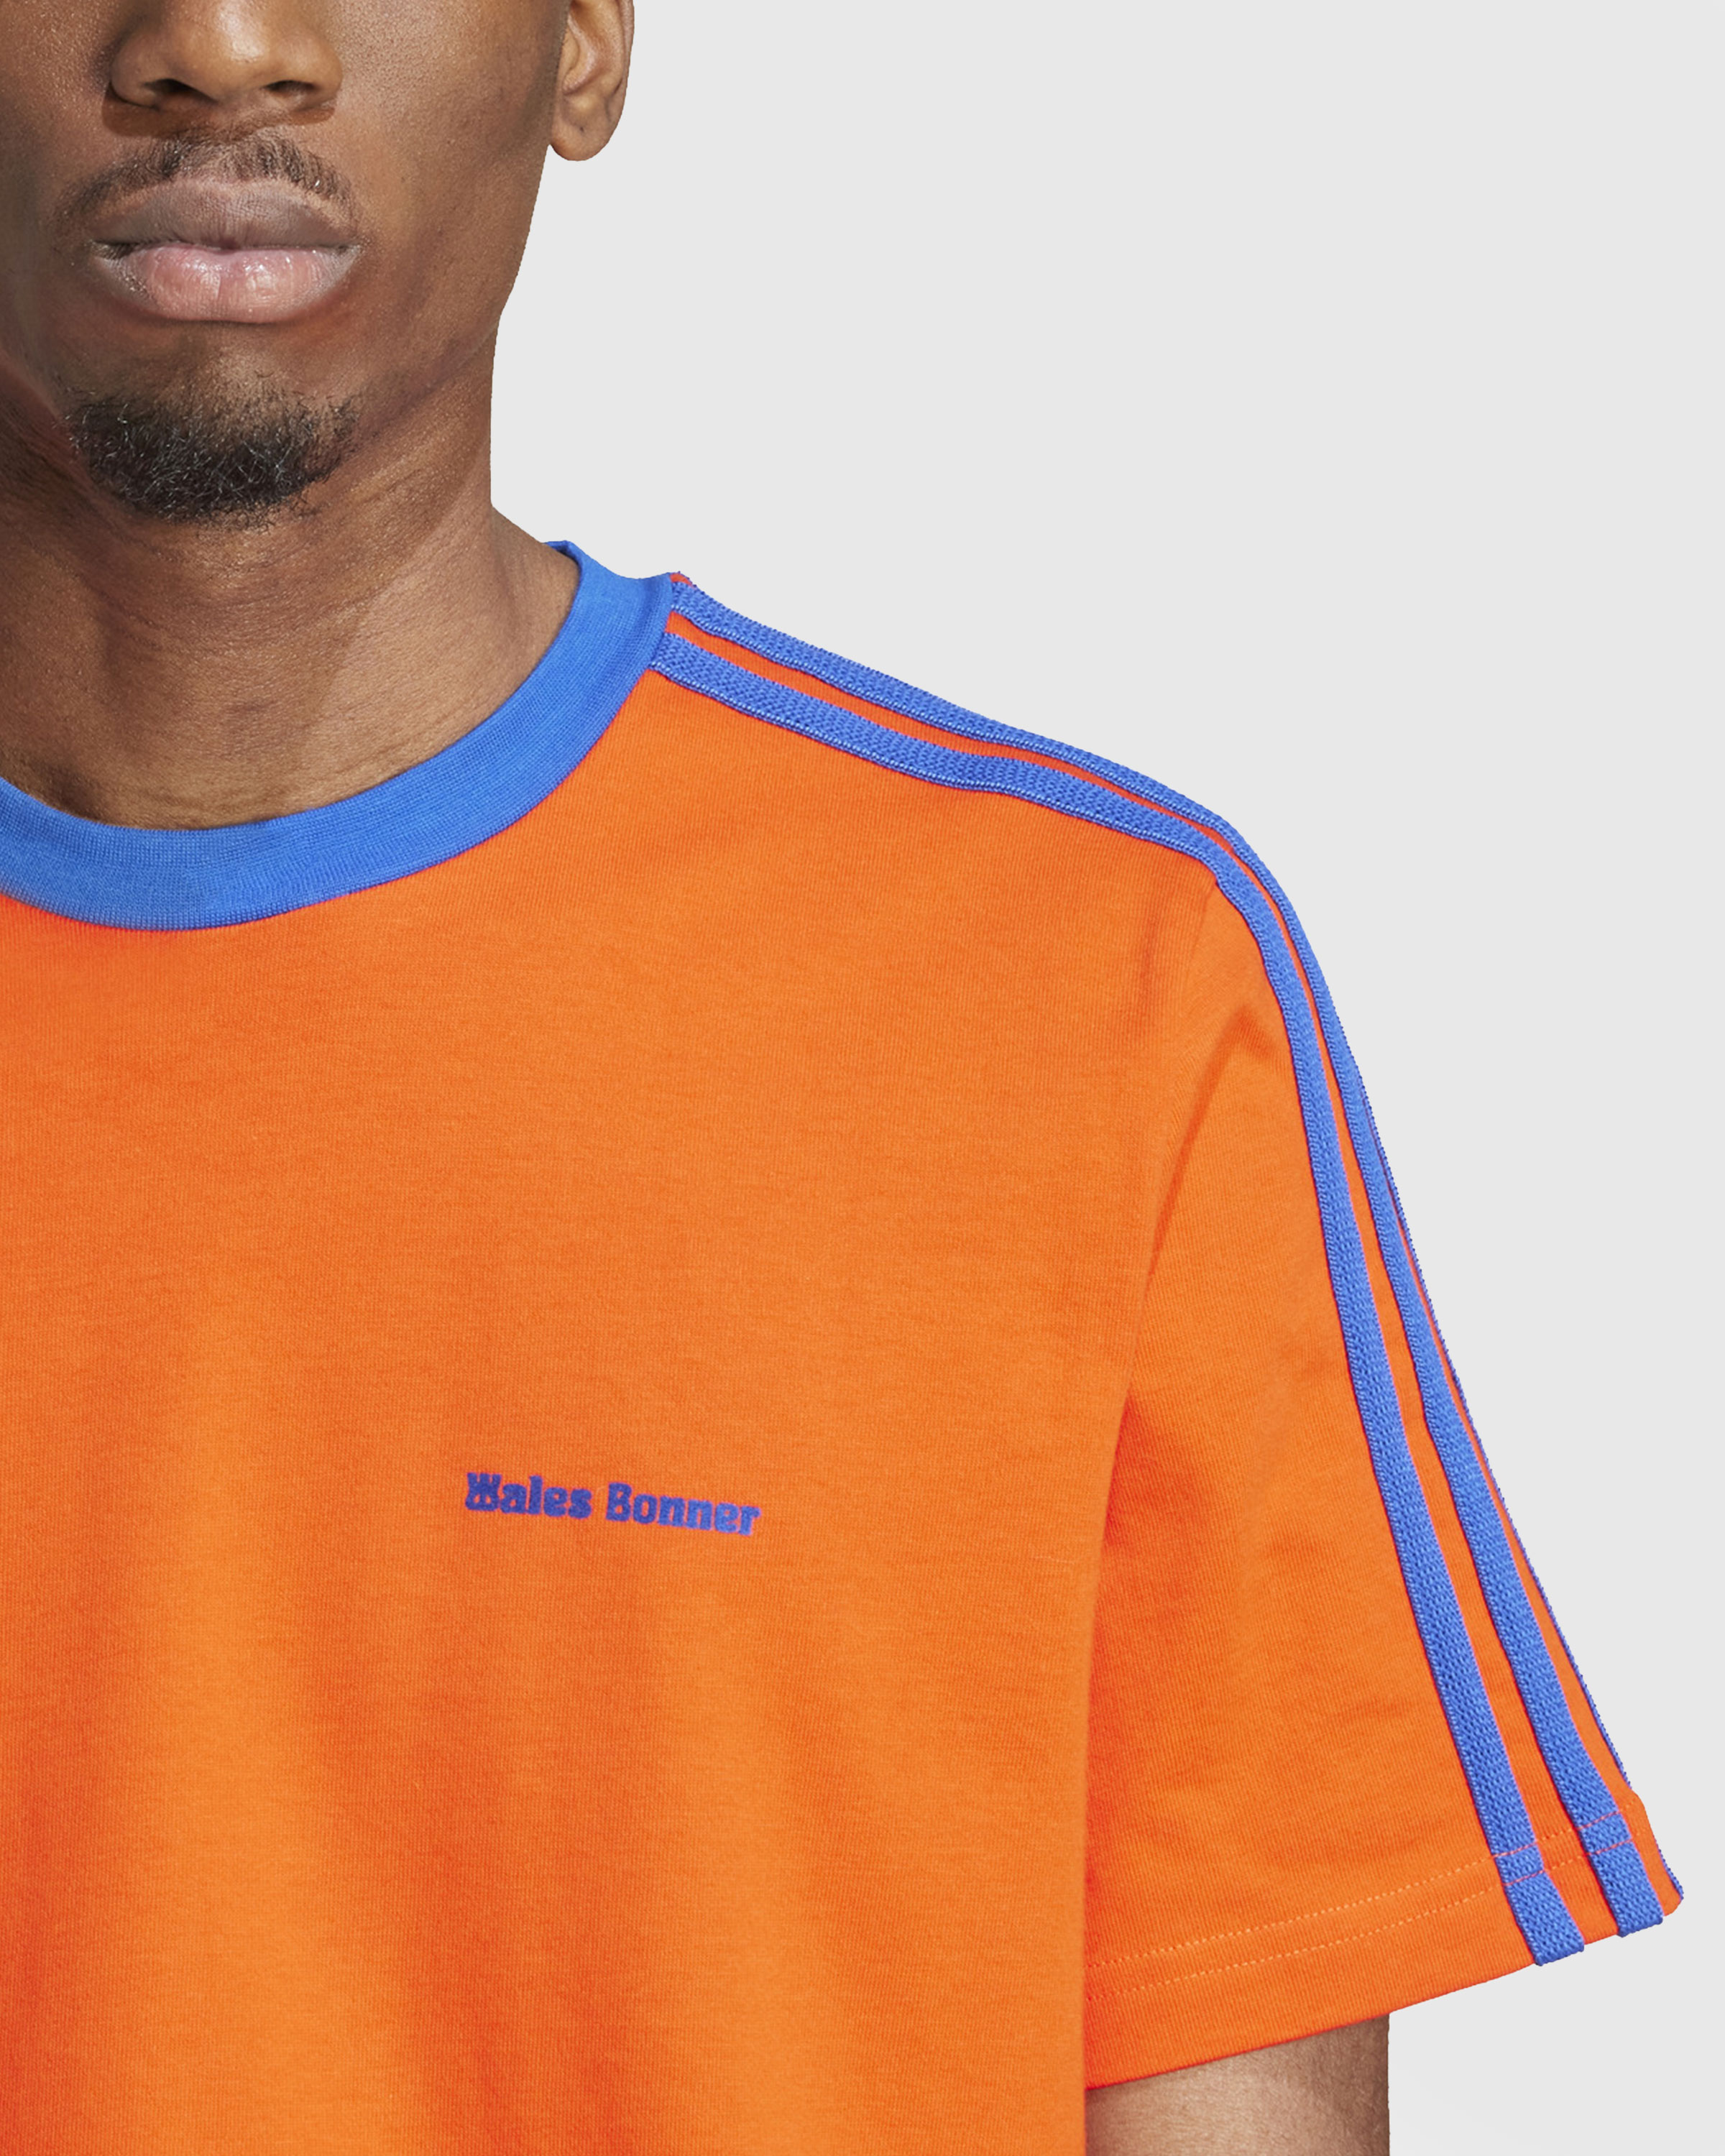 Adidas x Wales Bonner – Short-Sleeve Tee Bold Orange/Team Royal Blue - T-Shirts - Orange - Image 6